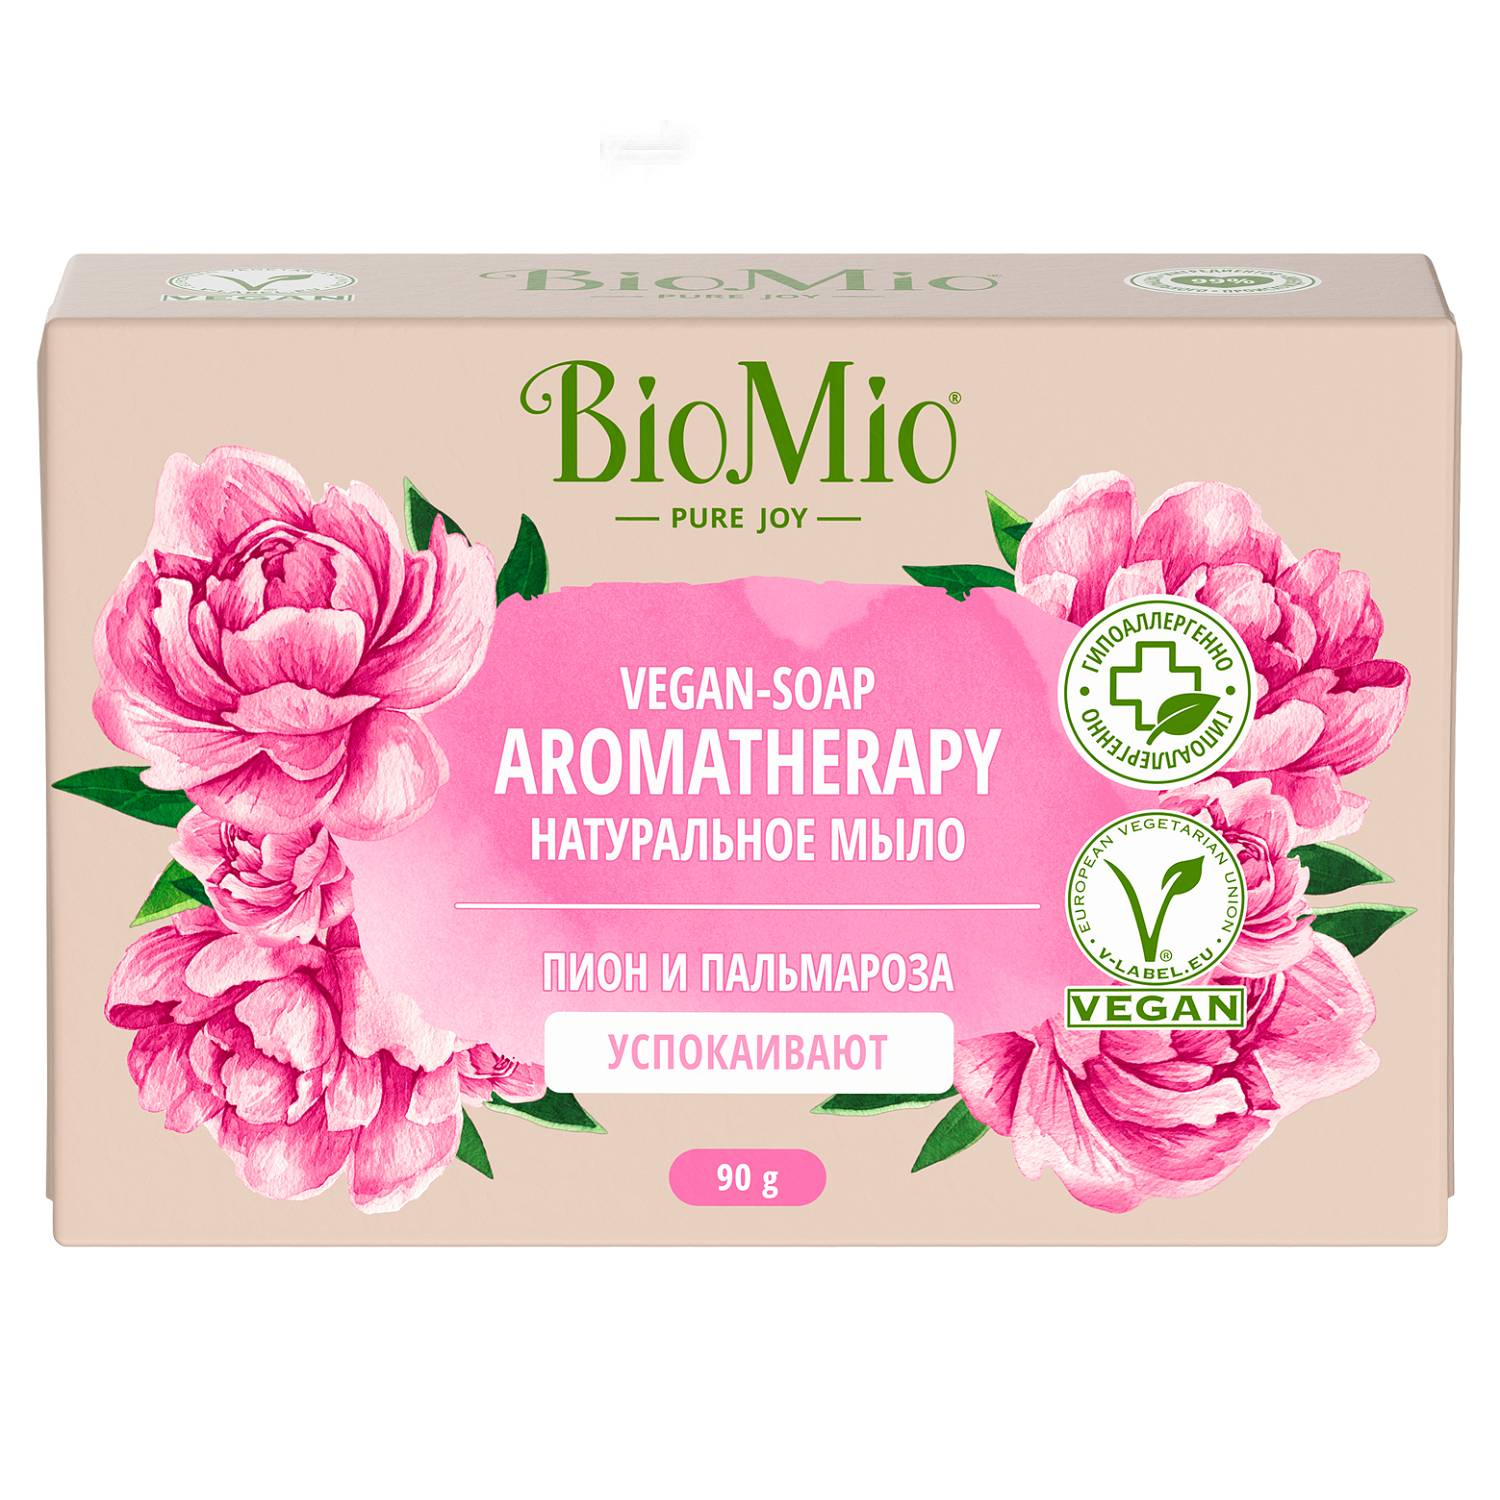 BioMio Натуральное мыло Пион и пальмароза Vegan Soap Aromatherapy, 90 г (BioMio, Мыло) веганское мыло для бритья розмарин 80 г bambow bambaw